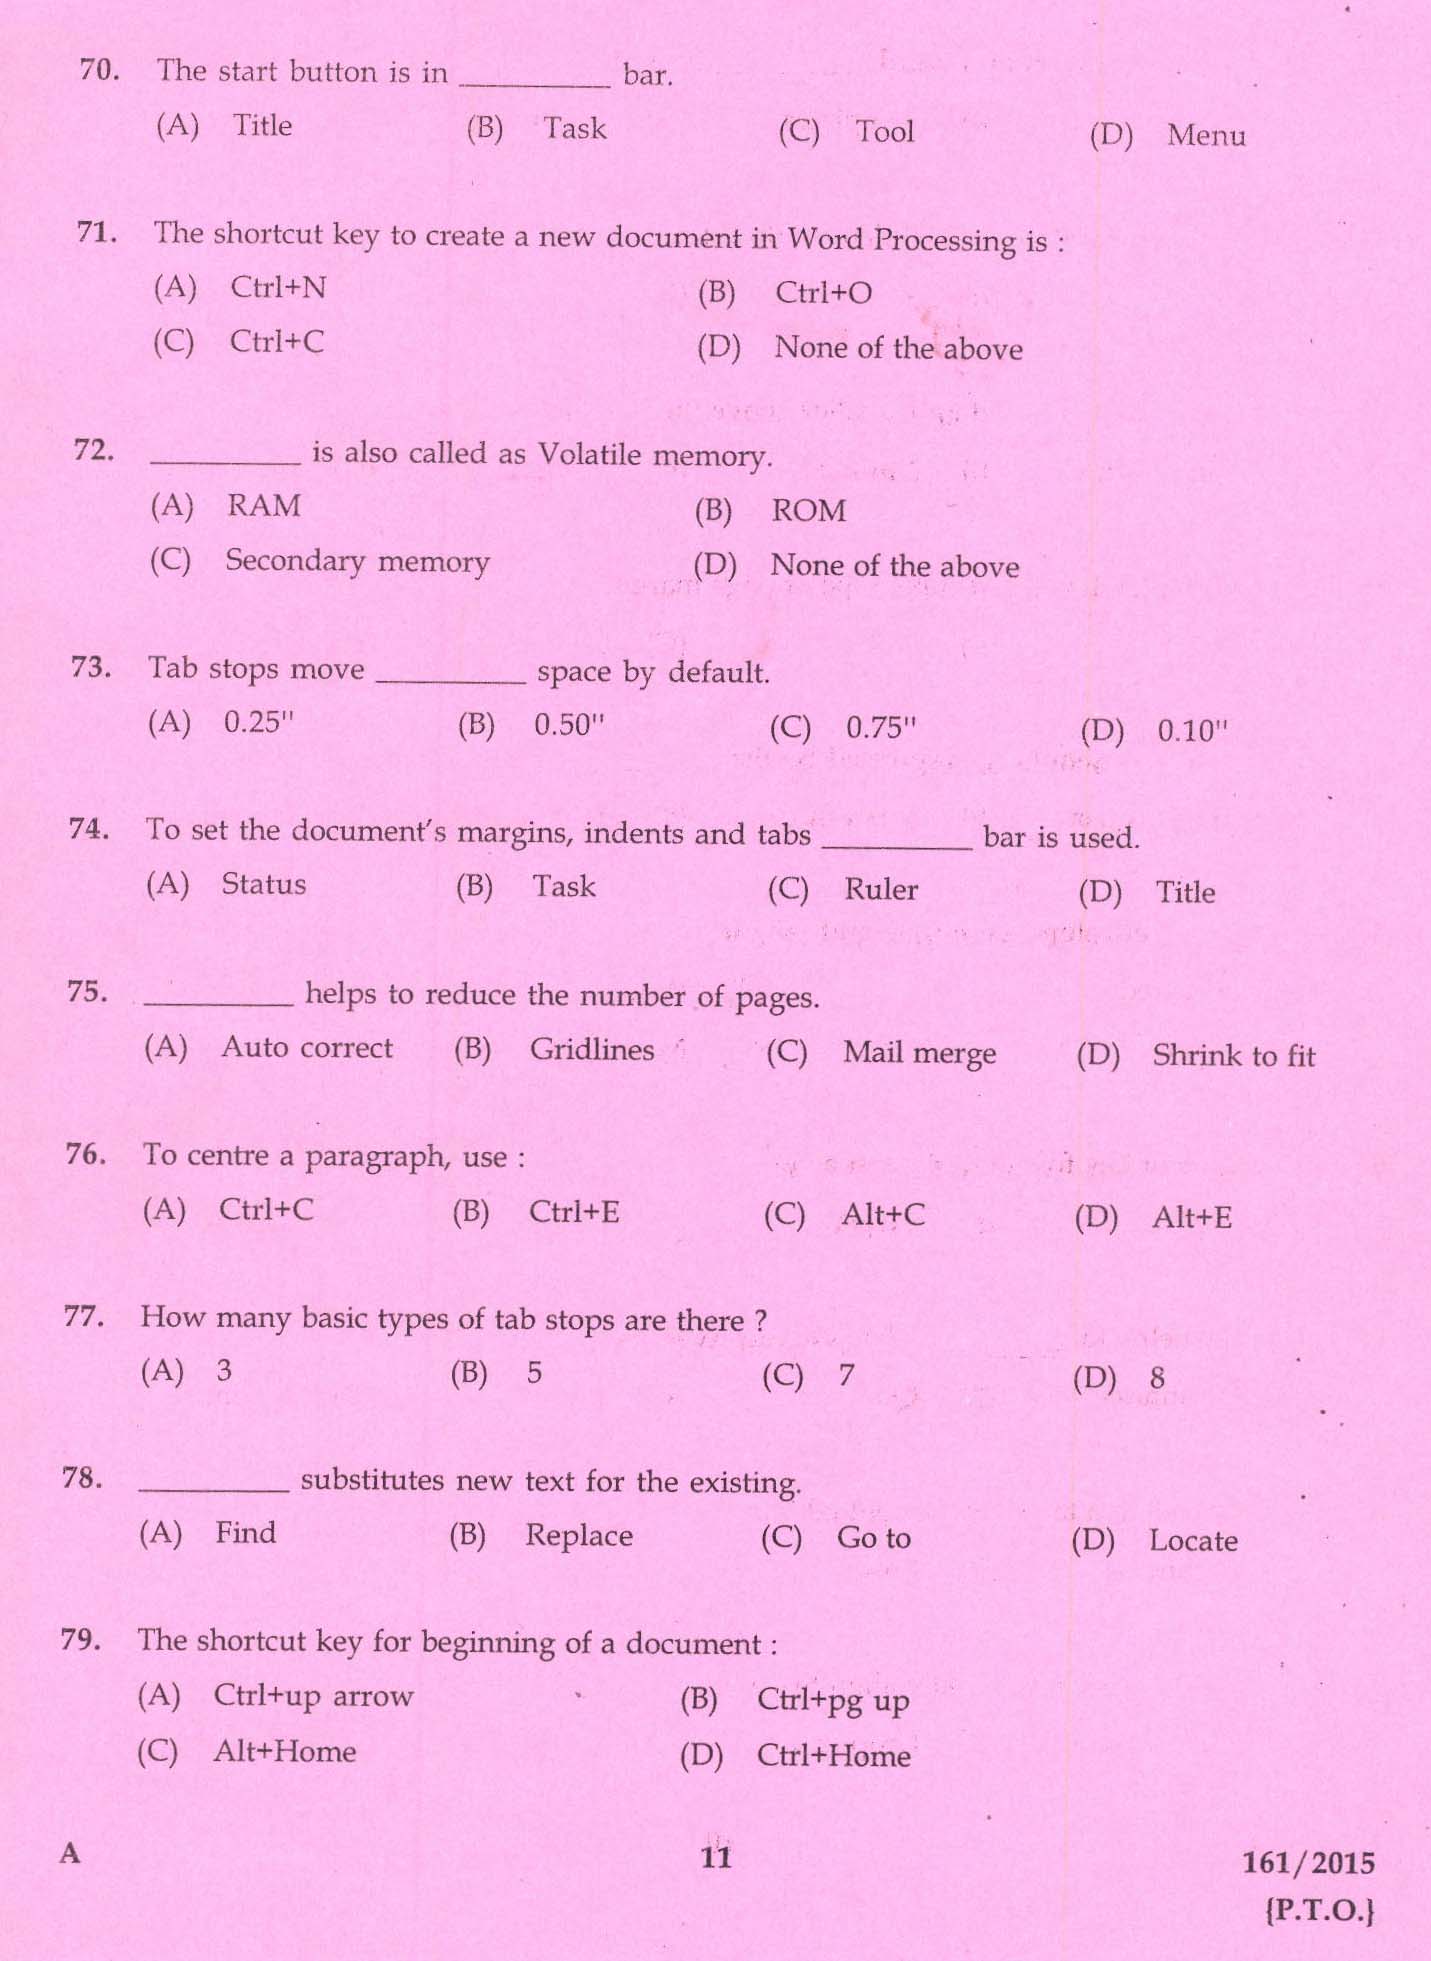 Kerala PSC Stenographer Grade IV Exam 2015 Question Paper Code 1612015 9